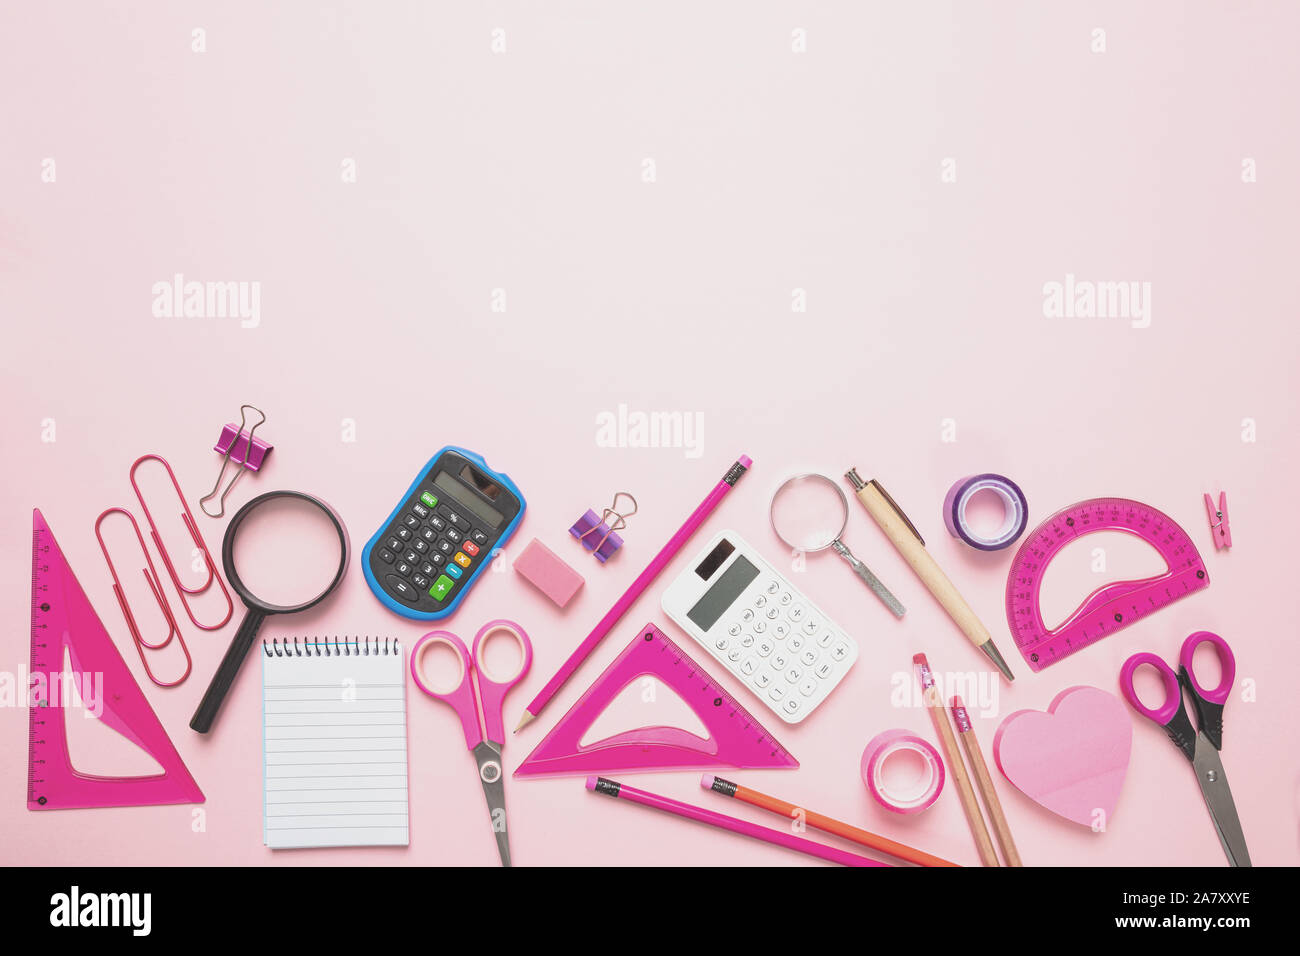 Articoli di cancelleria e forniture scolastiche su sfondo rosa, vista dall'alto Foto Stock